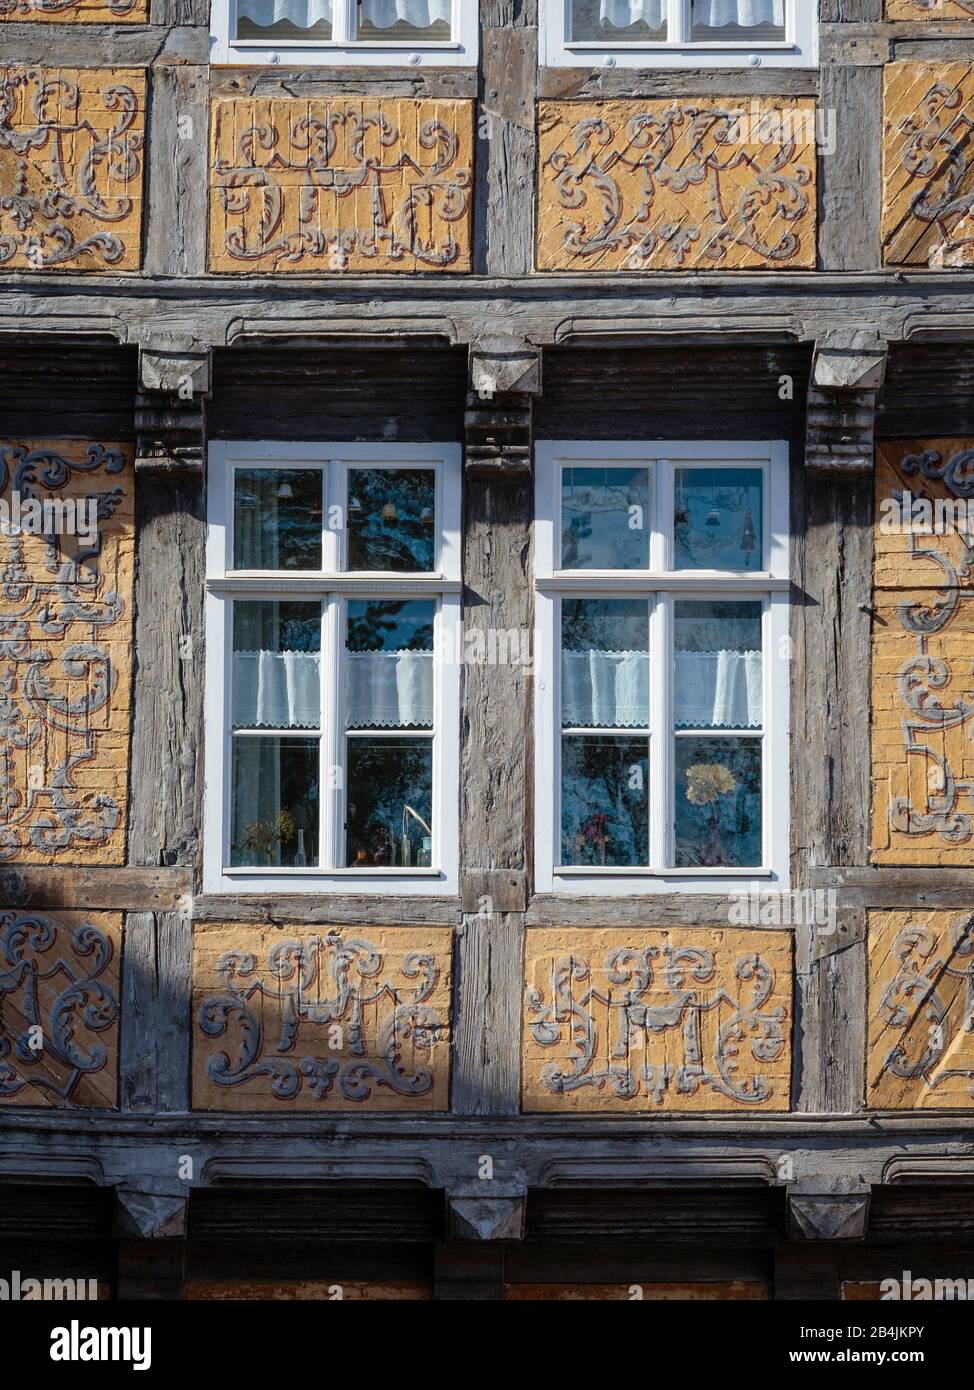 Europa, Deutschland, Sachsen-Anhalt, Quedlinburg. Die kunstvoll bemalte Fassade eines historischen Fachwerkhauses am Schlossplatz. Stock Photo